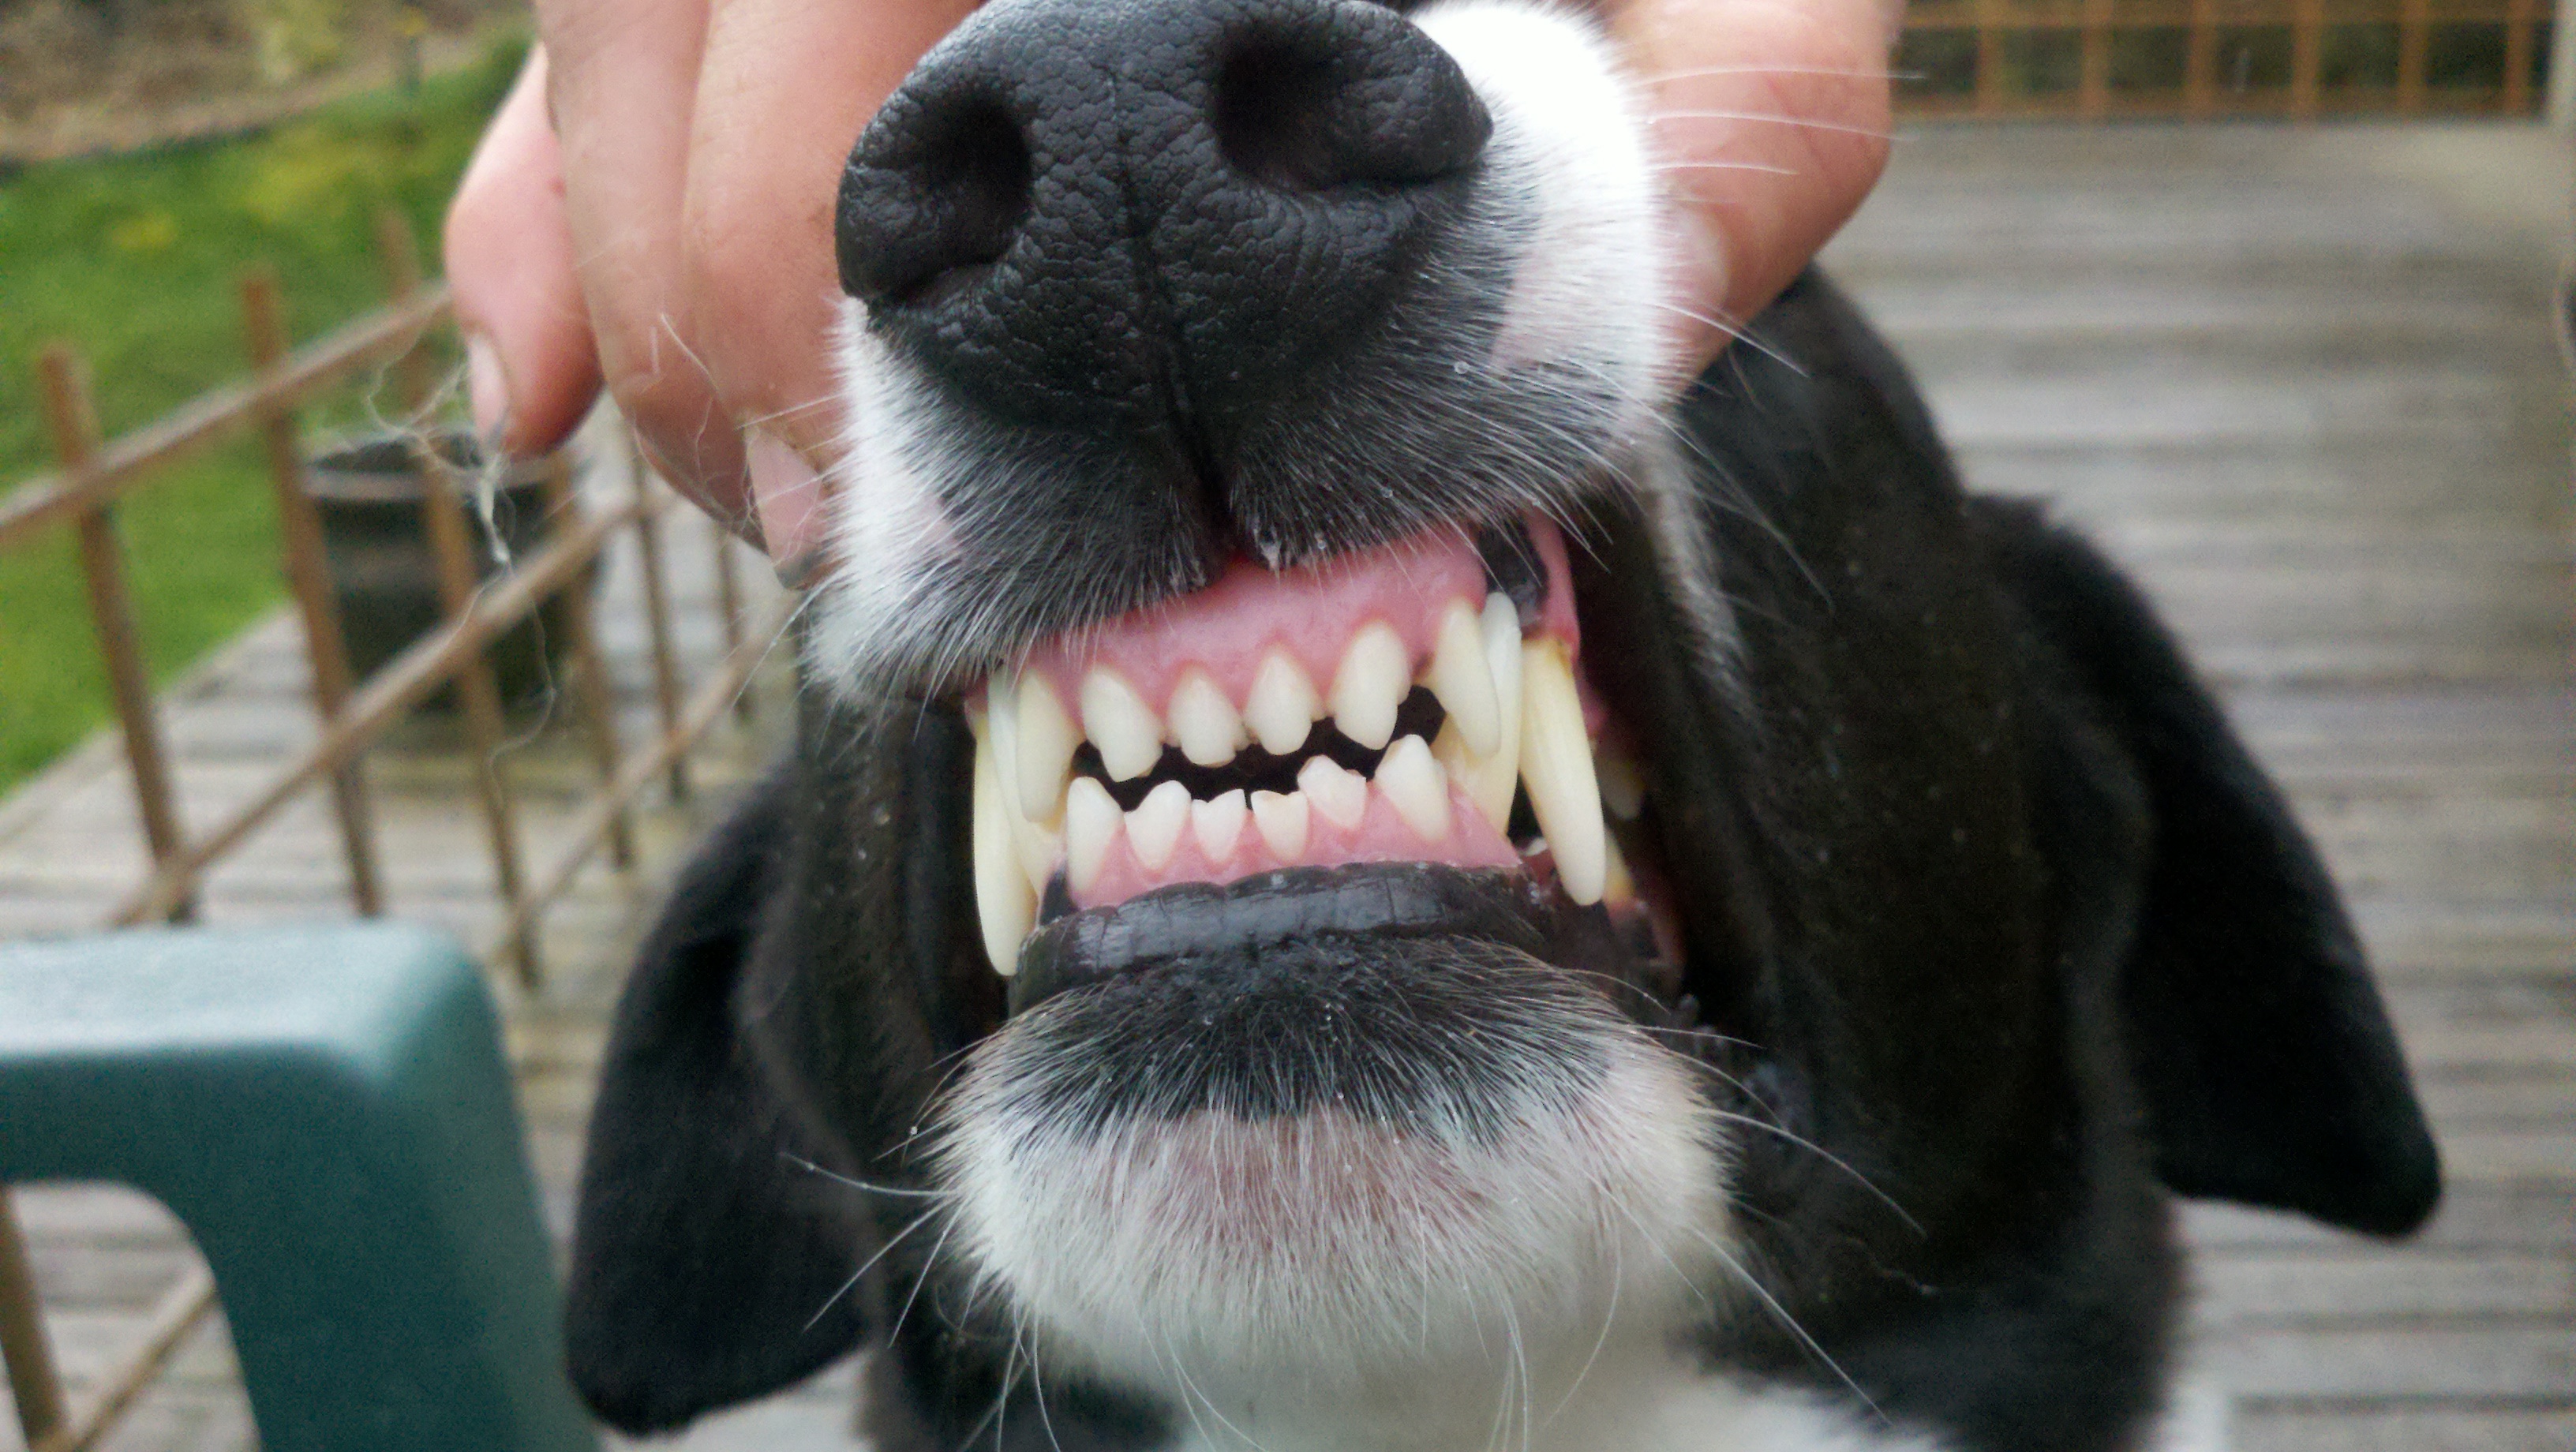 O encaixe padrão dos dentes dos cães é como esse sorriso da foto